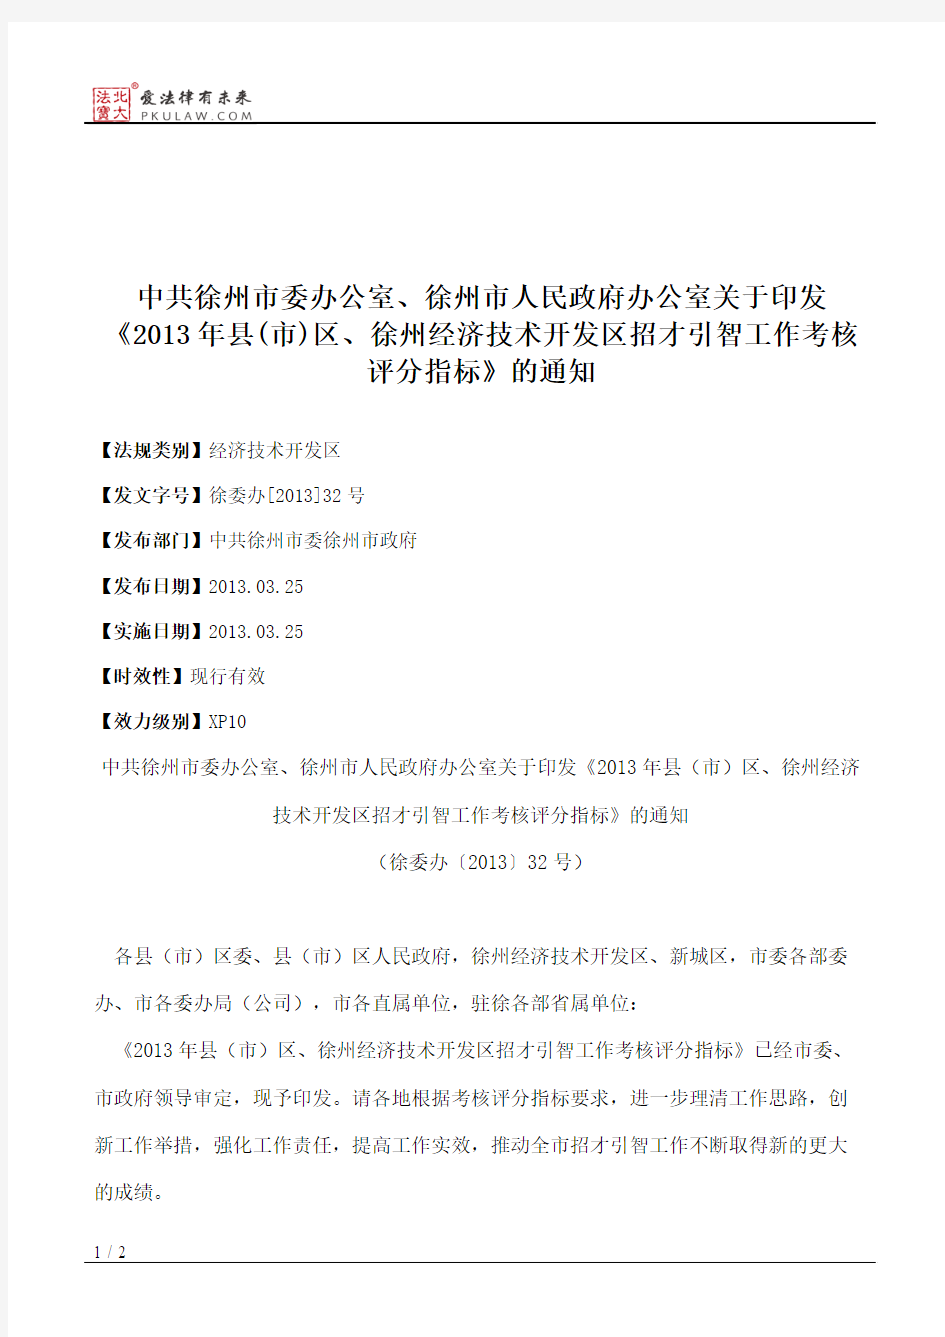 中共徐州市委办公室、徐州市人民政府办公室关于印发《2013年县(市)